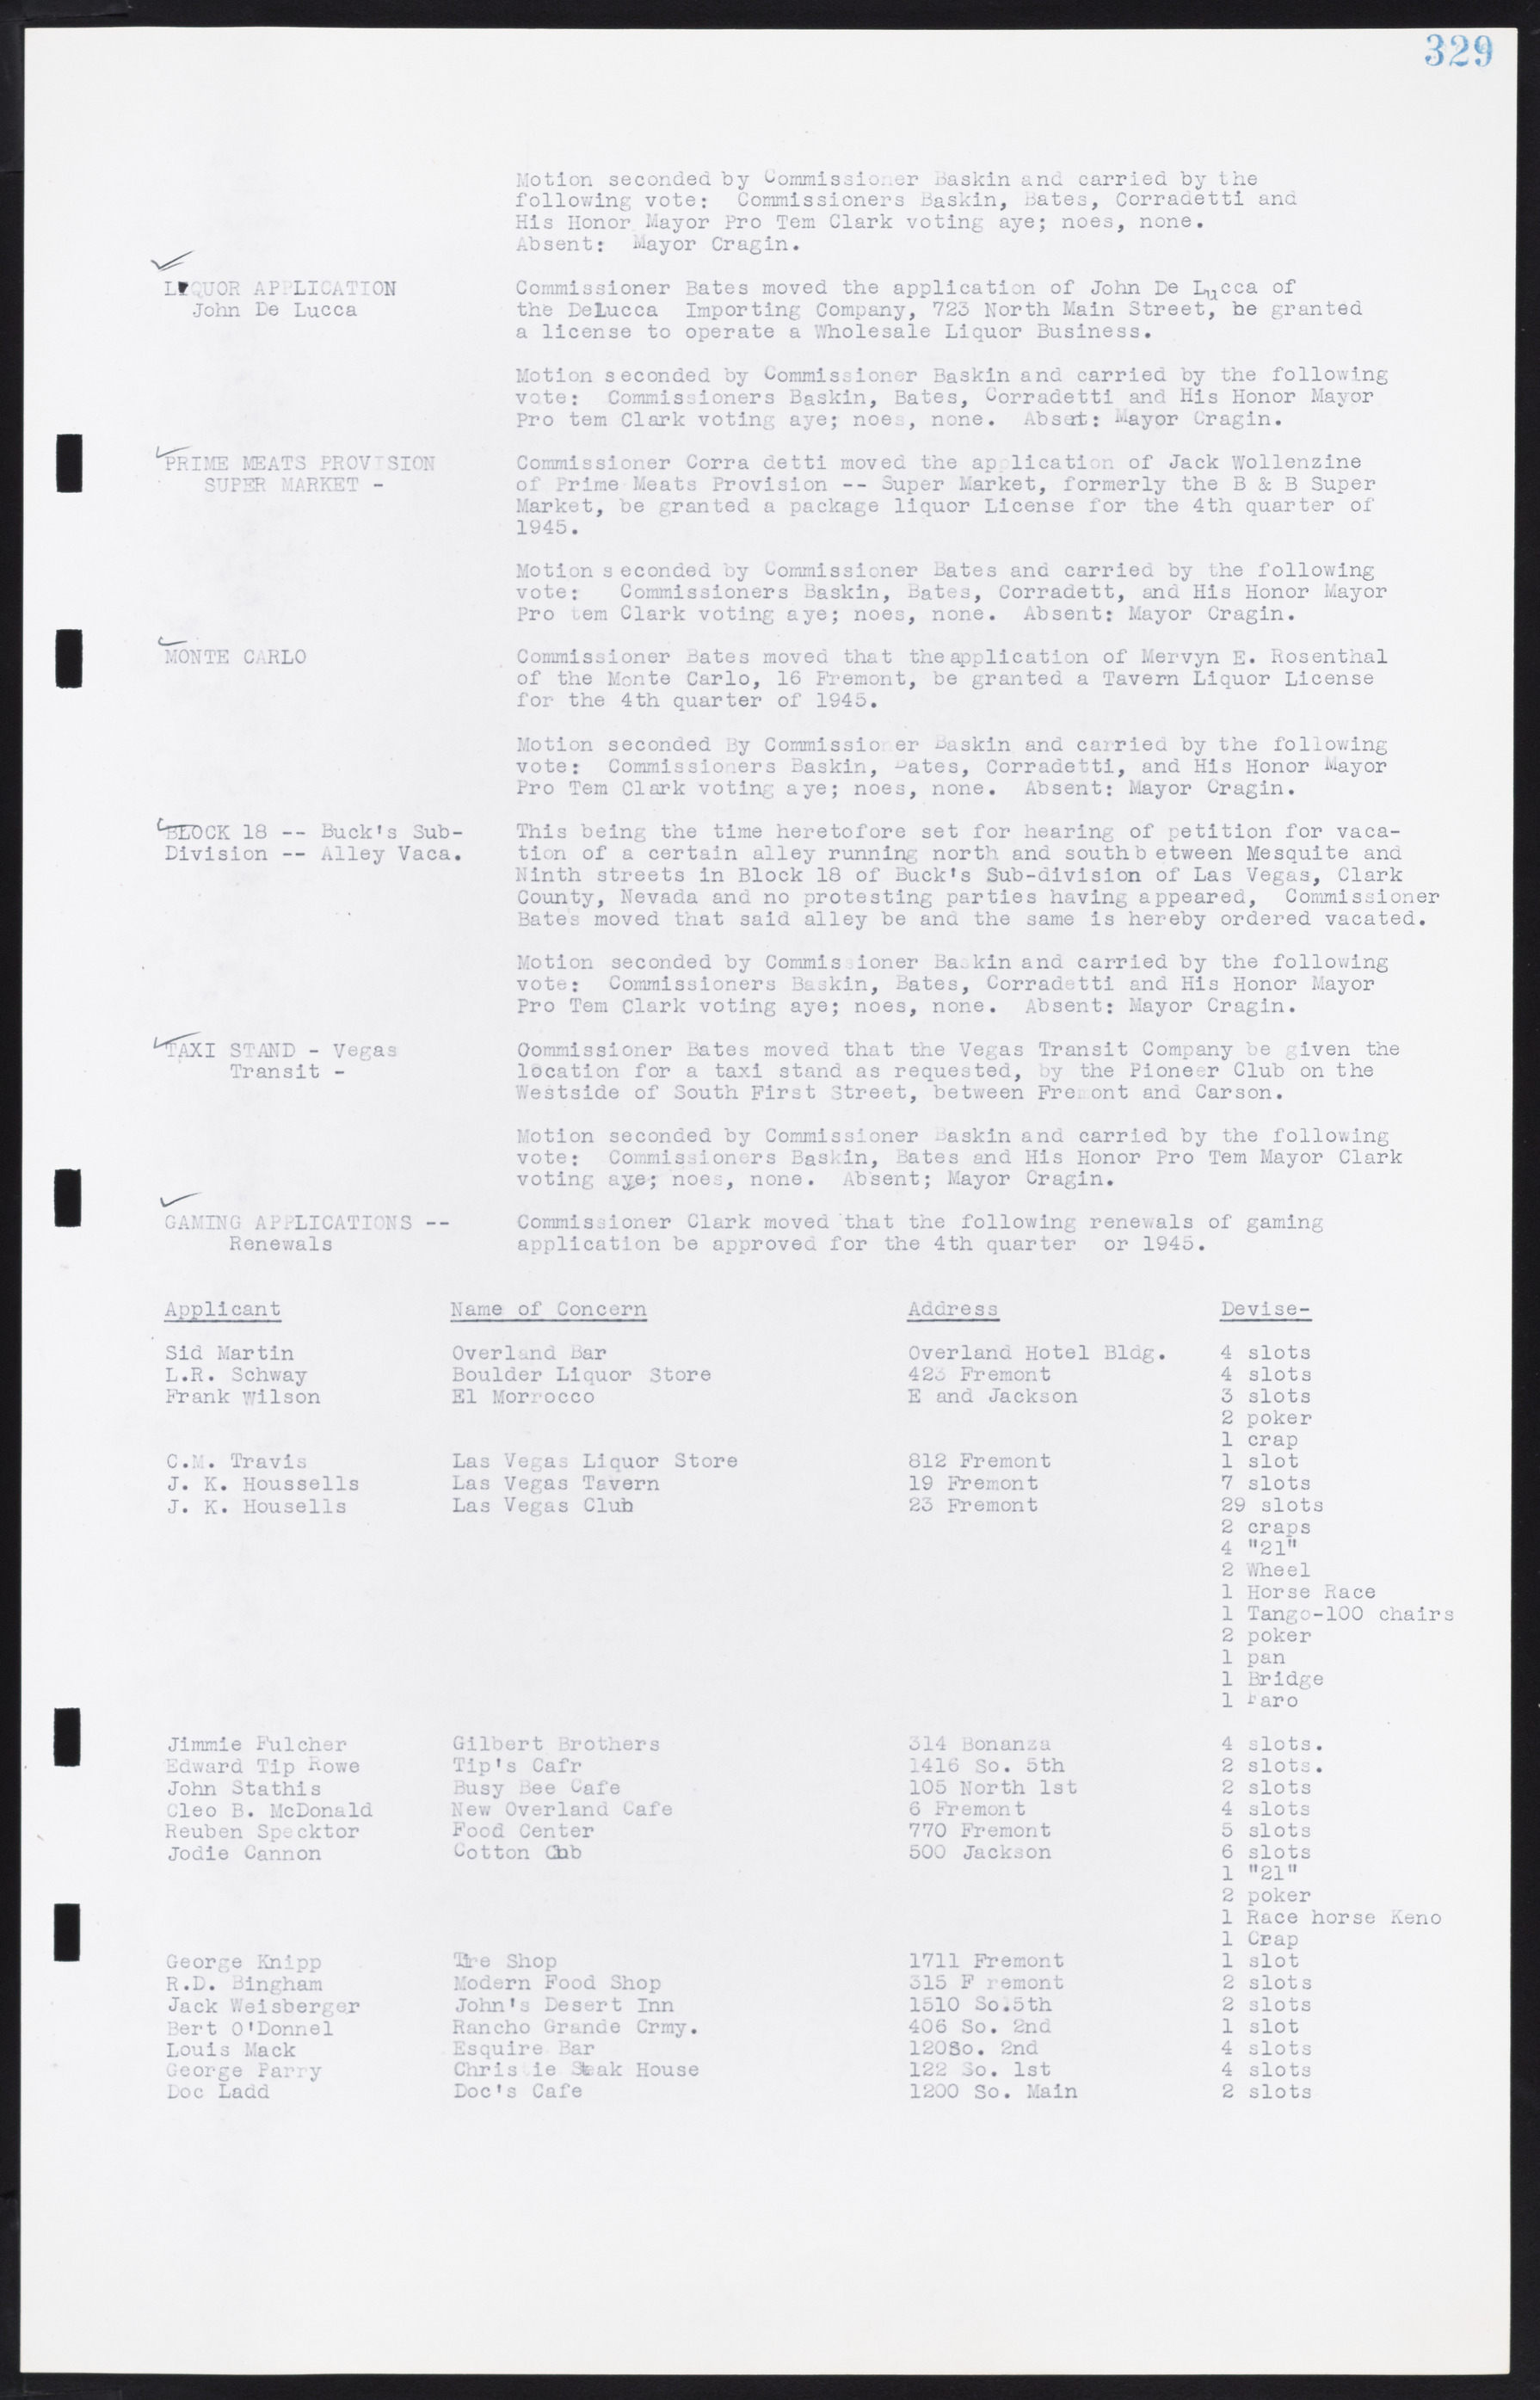 Las Vegas City Commission Minutes, August 11, 1942 to December 30, 1946, lvc000005-353